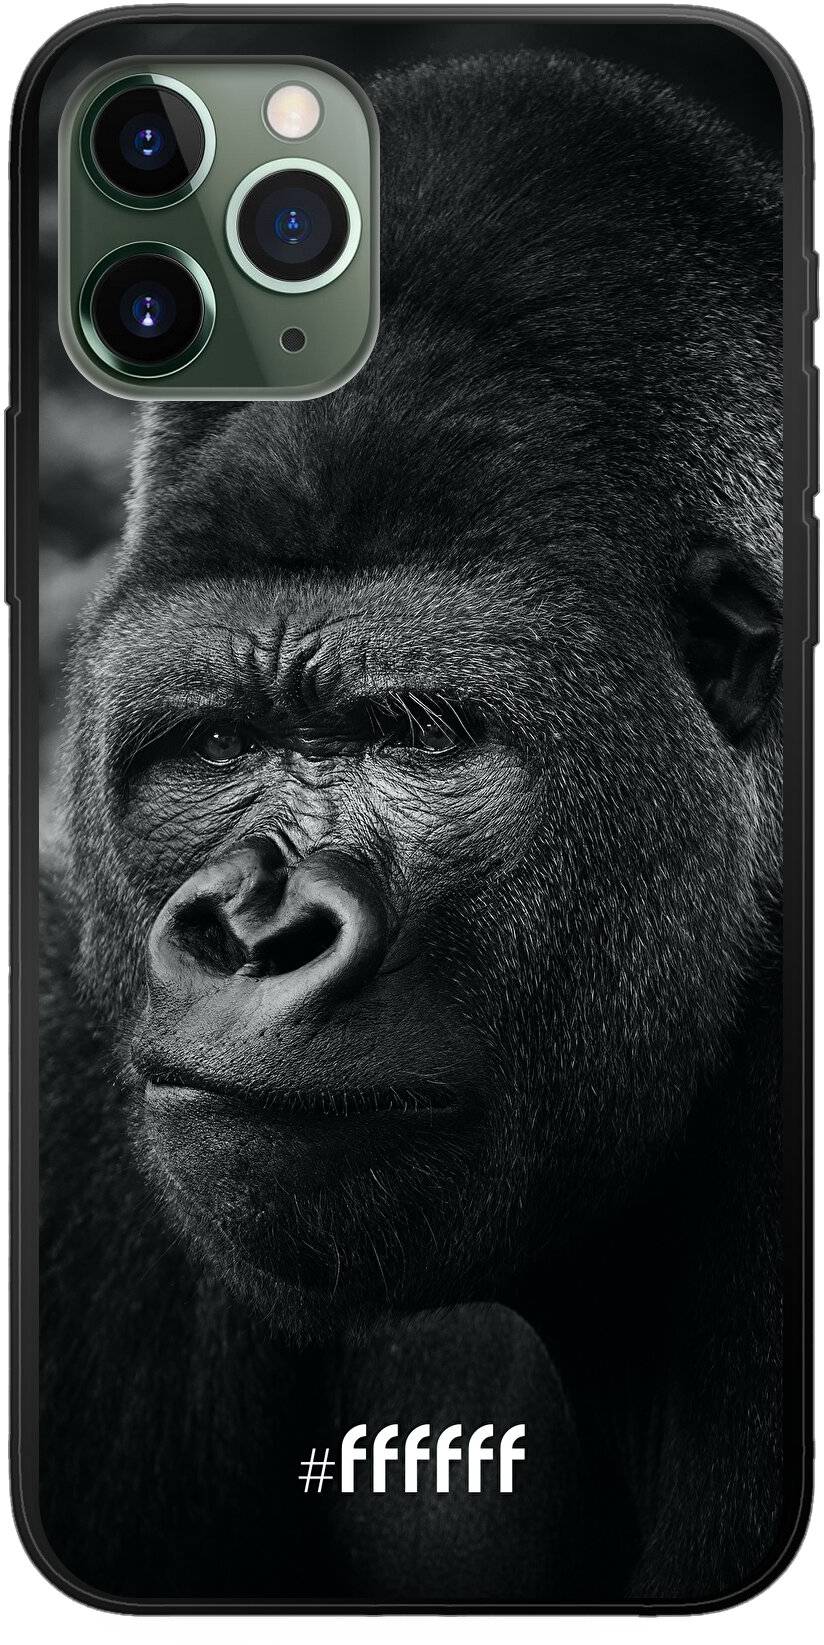 Gorilla iPhone 11 Pro